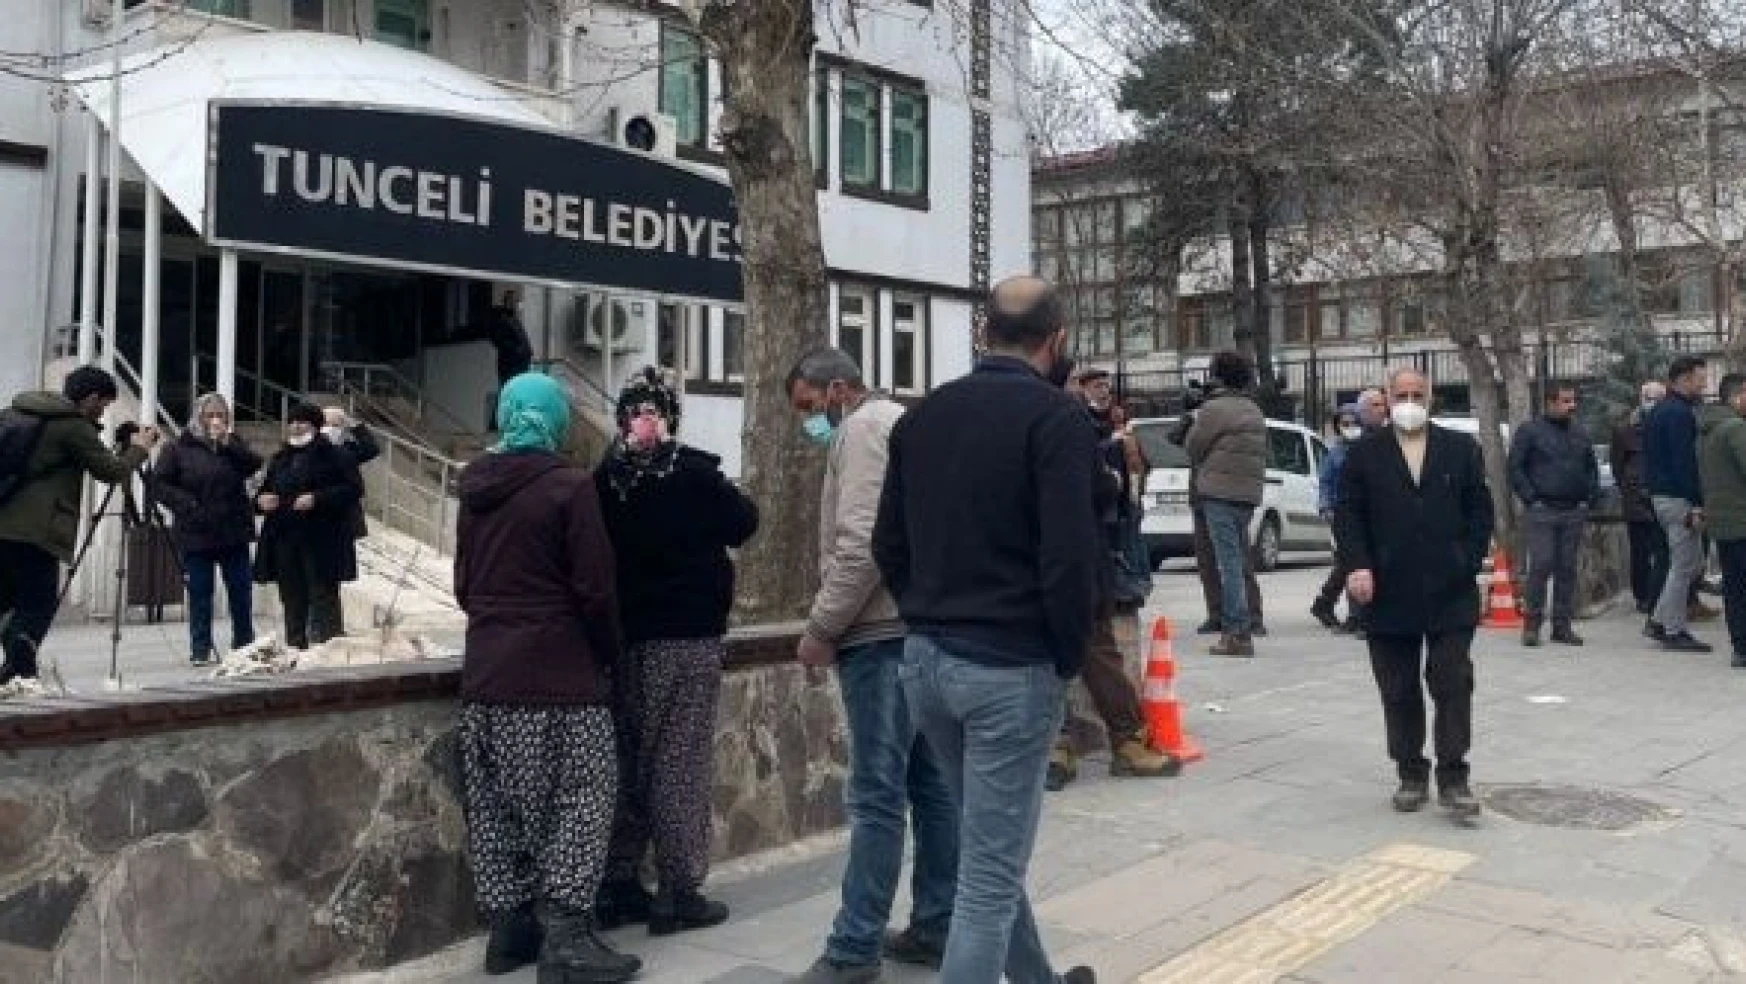 Tunceli'de vatandaş 55 bin ağaç için bir araya geldi!